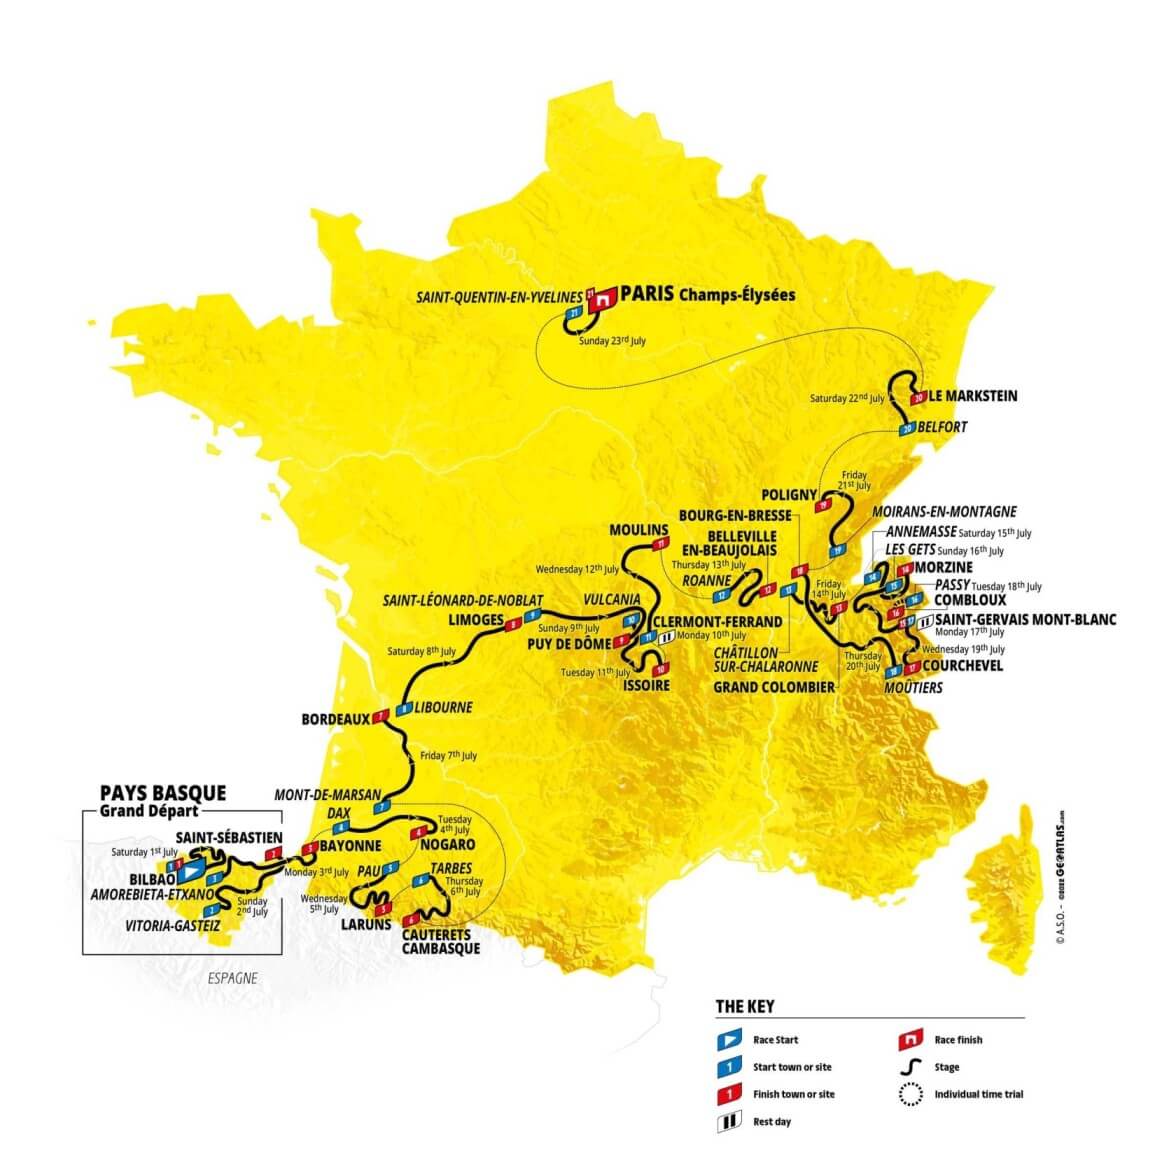 tour-de-france-2023-route